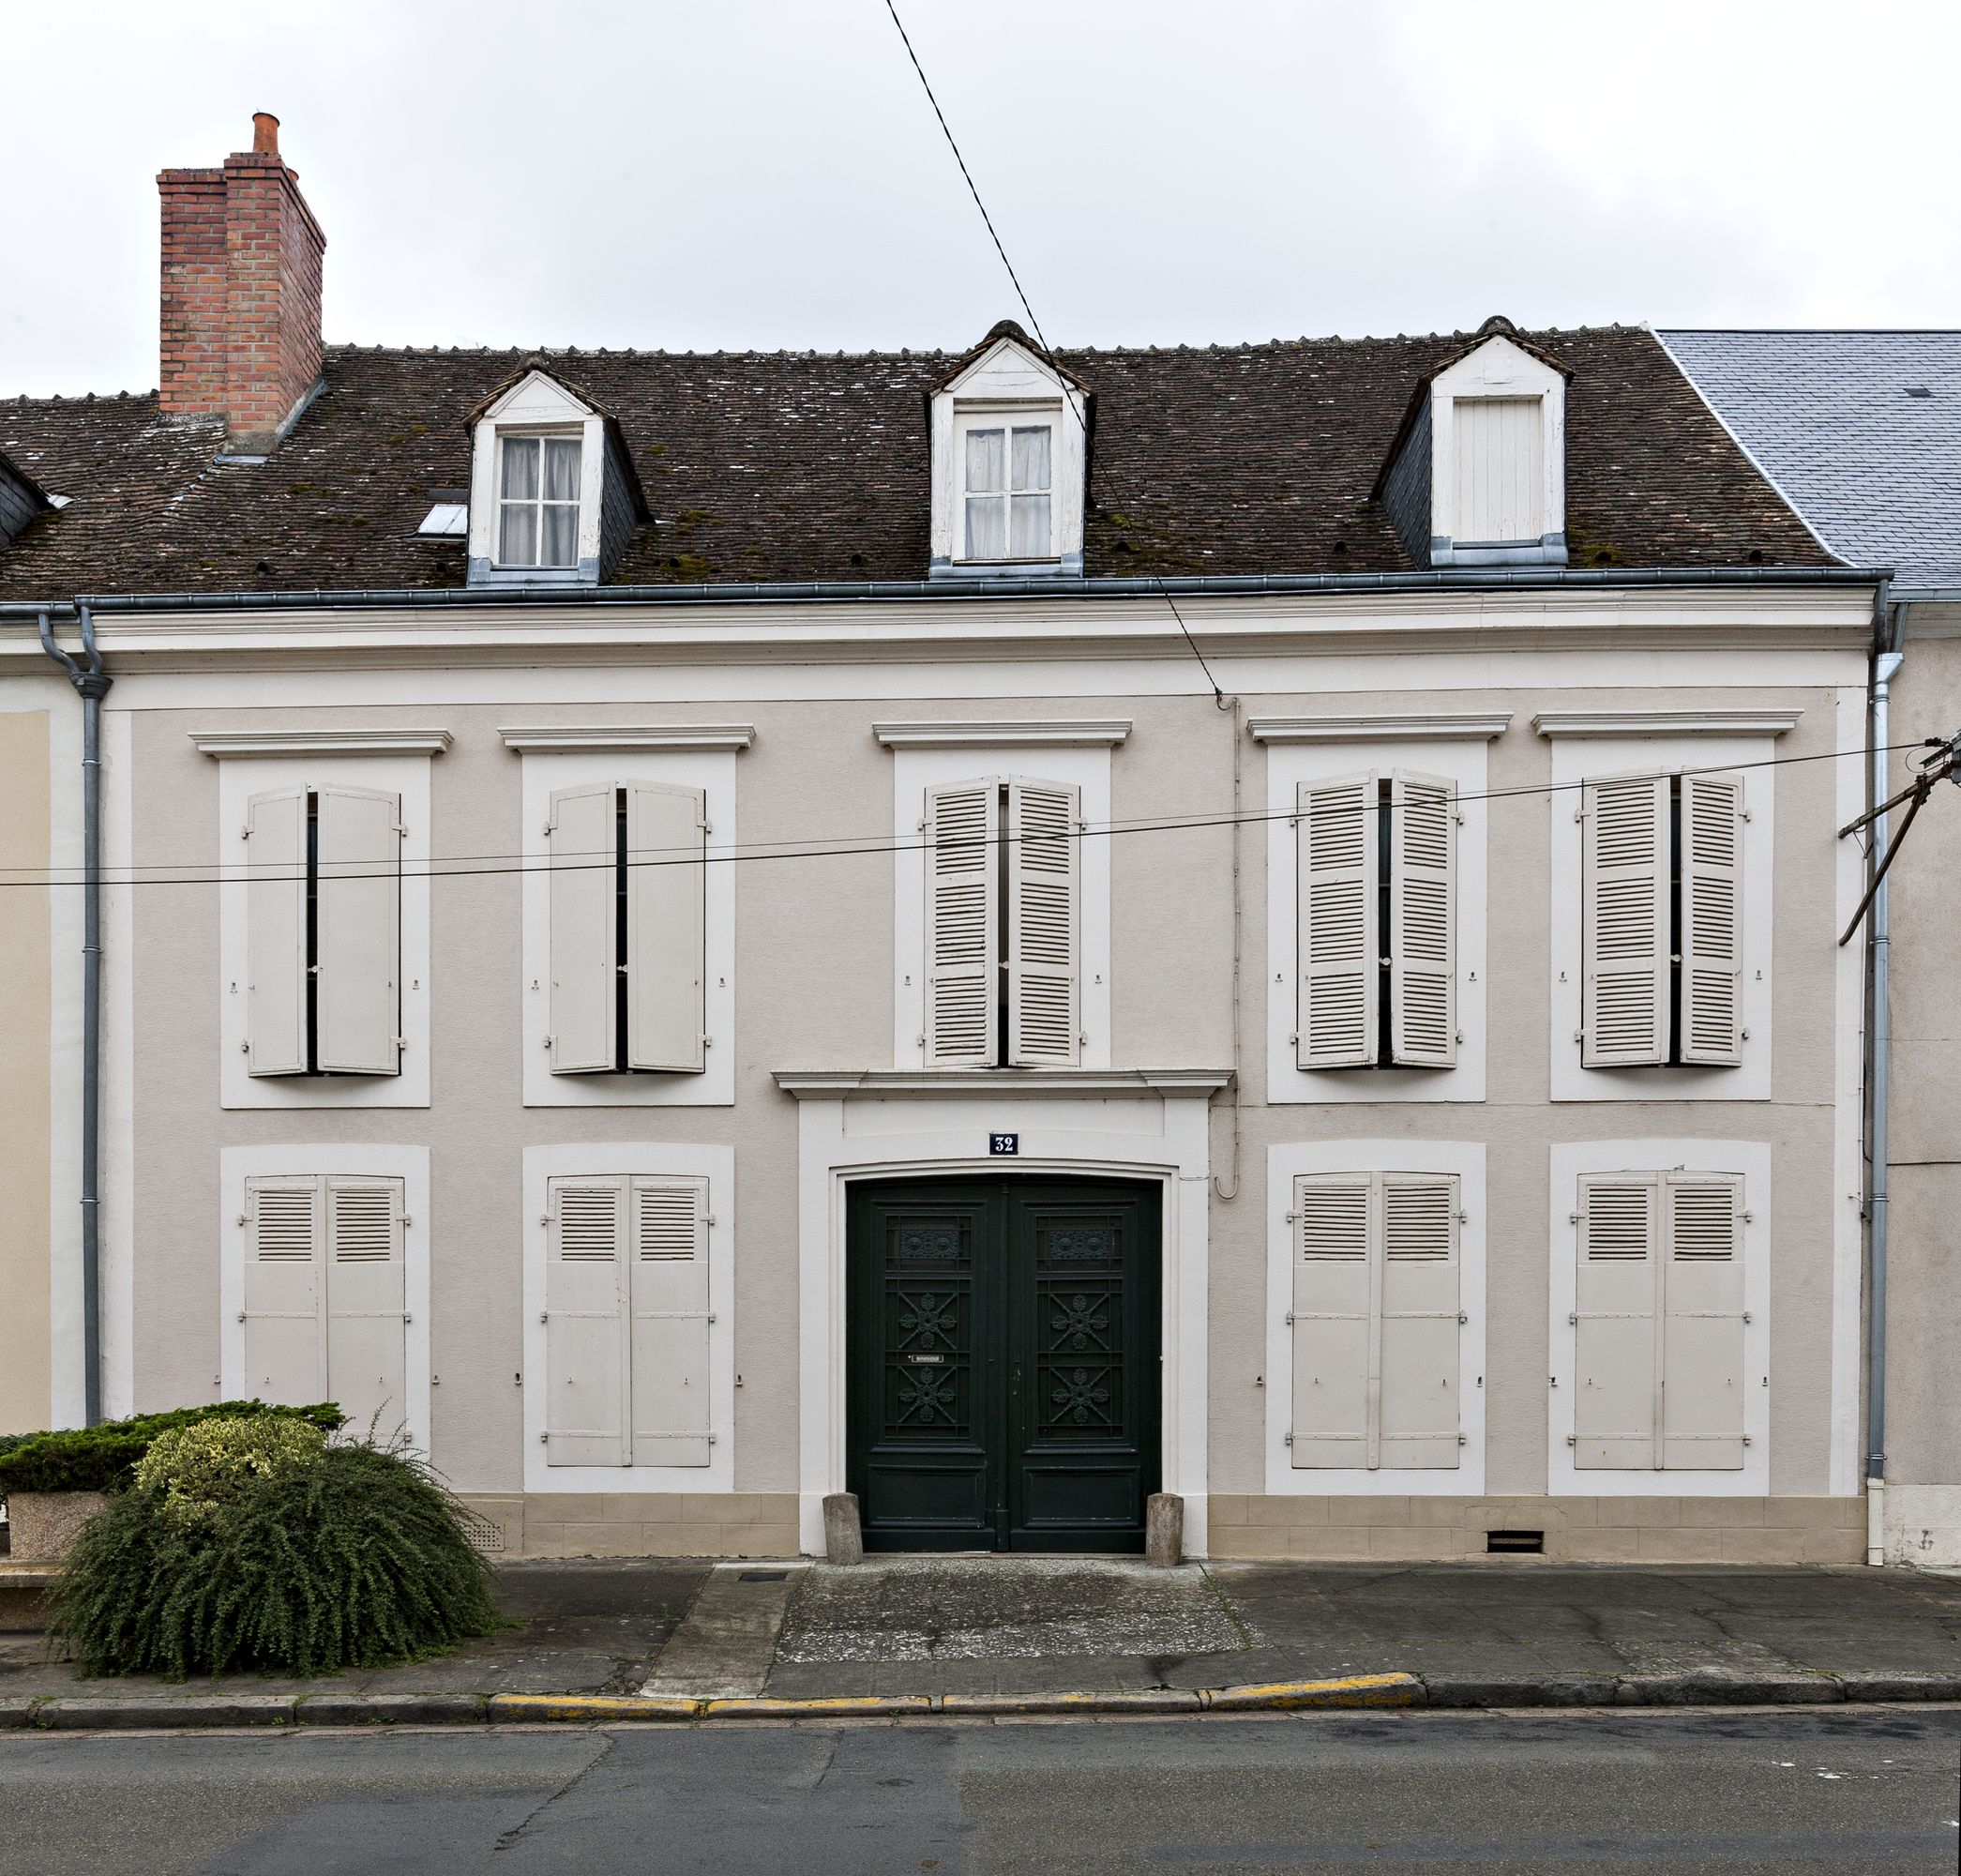 Le quartier de la place d'Armes et de la rue Saint-Nicolas, site de l'ancien château-fort de Bonnétable.